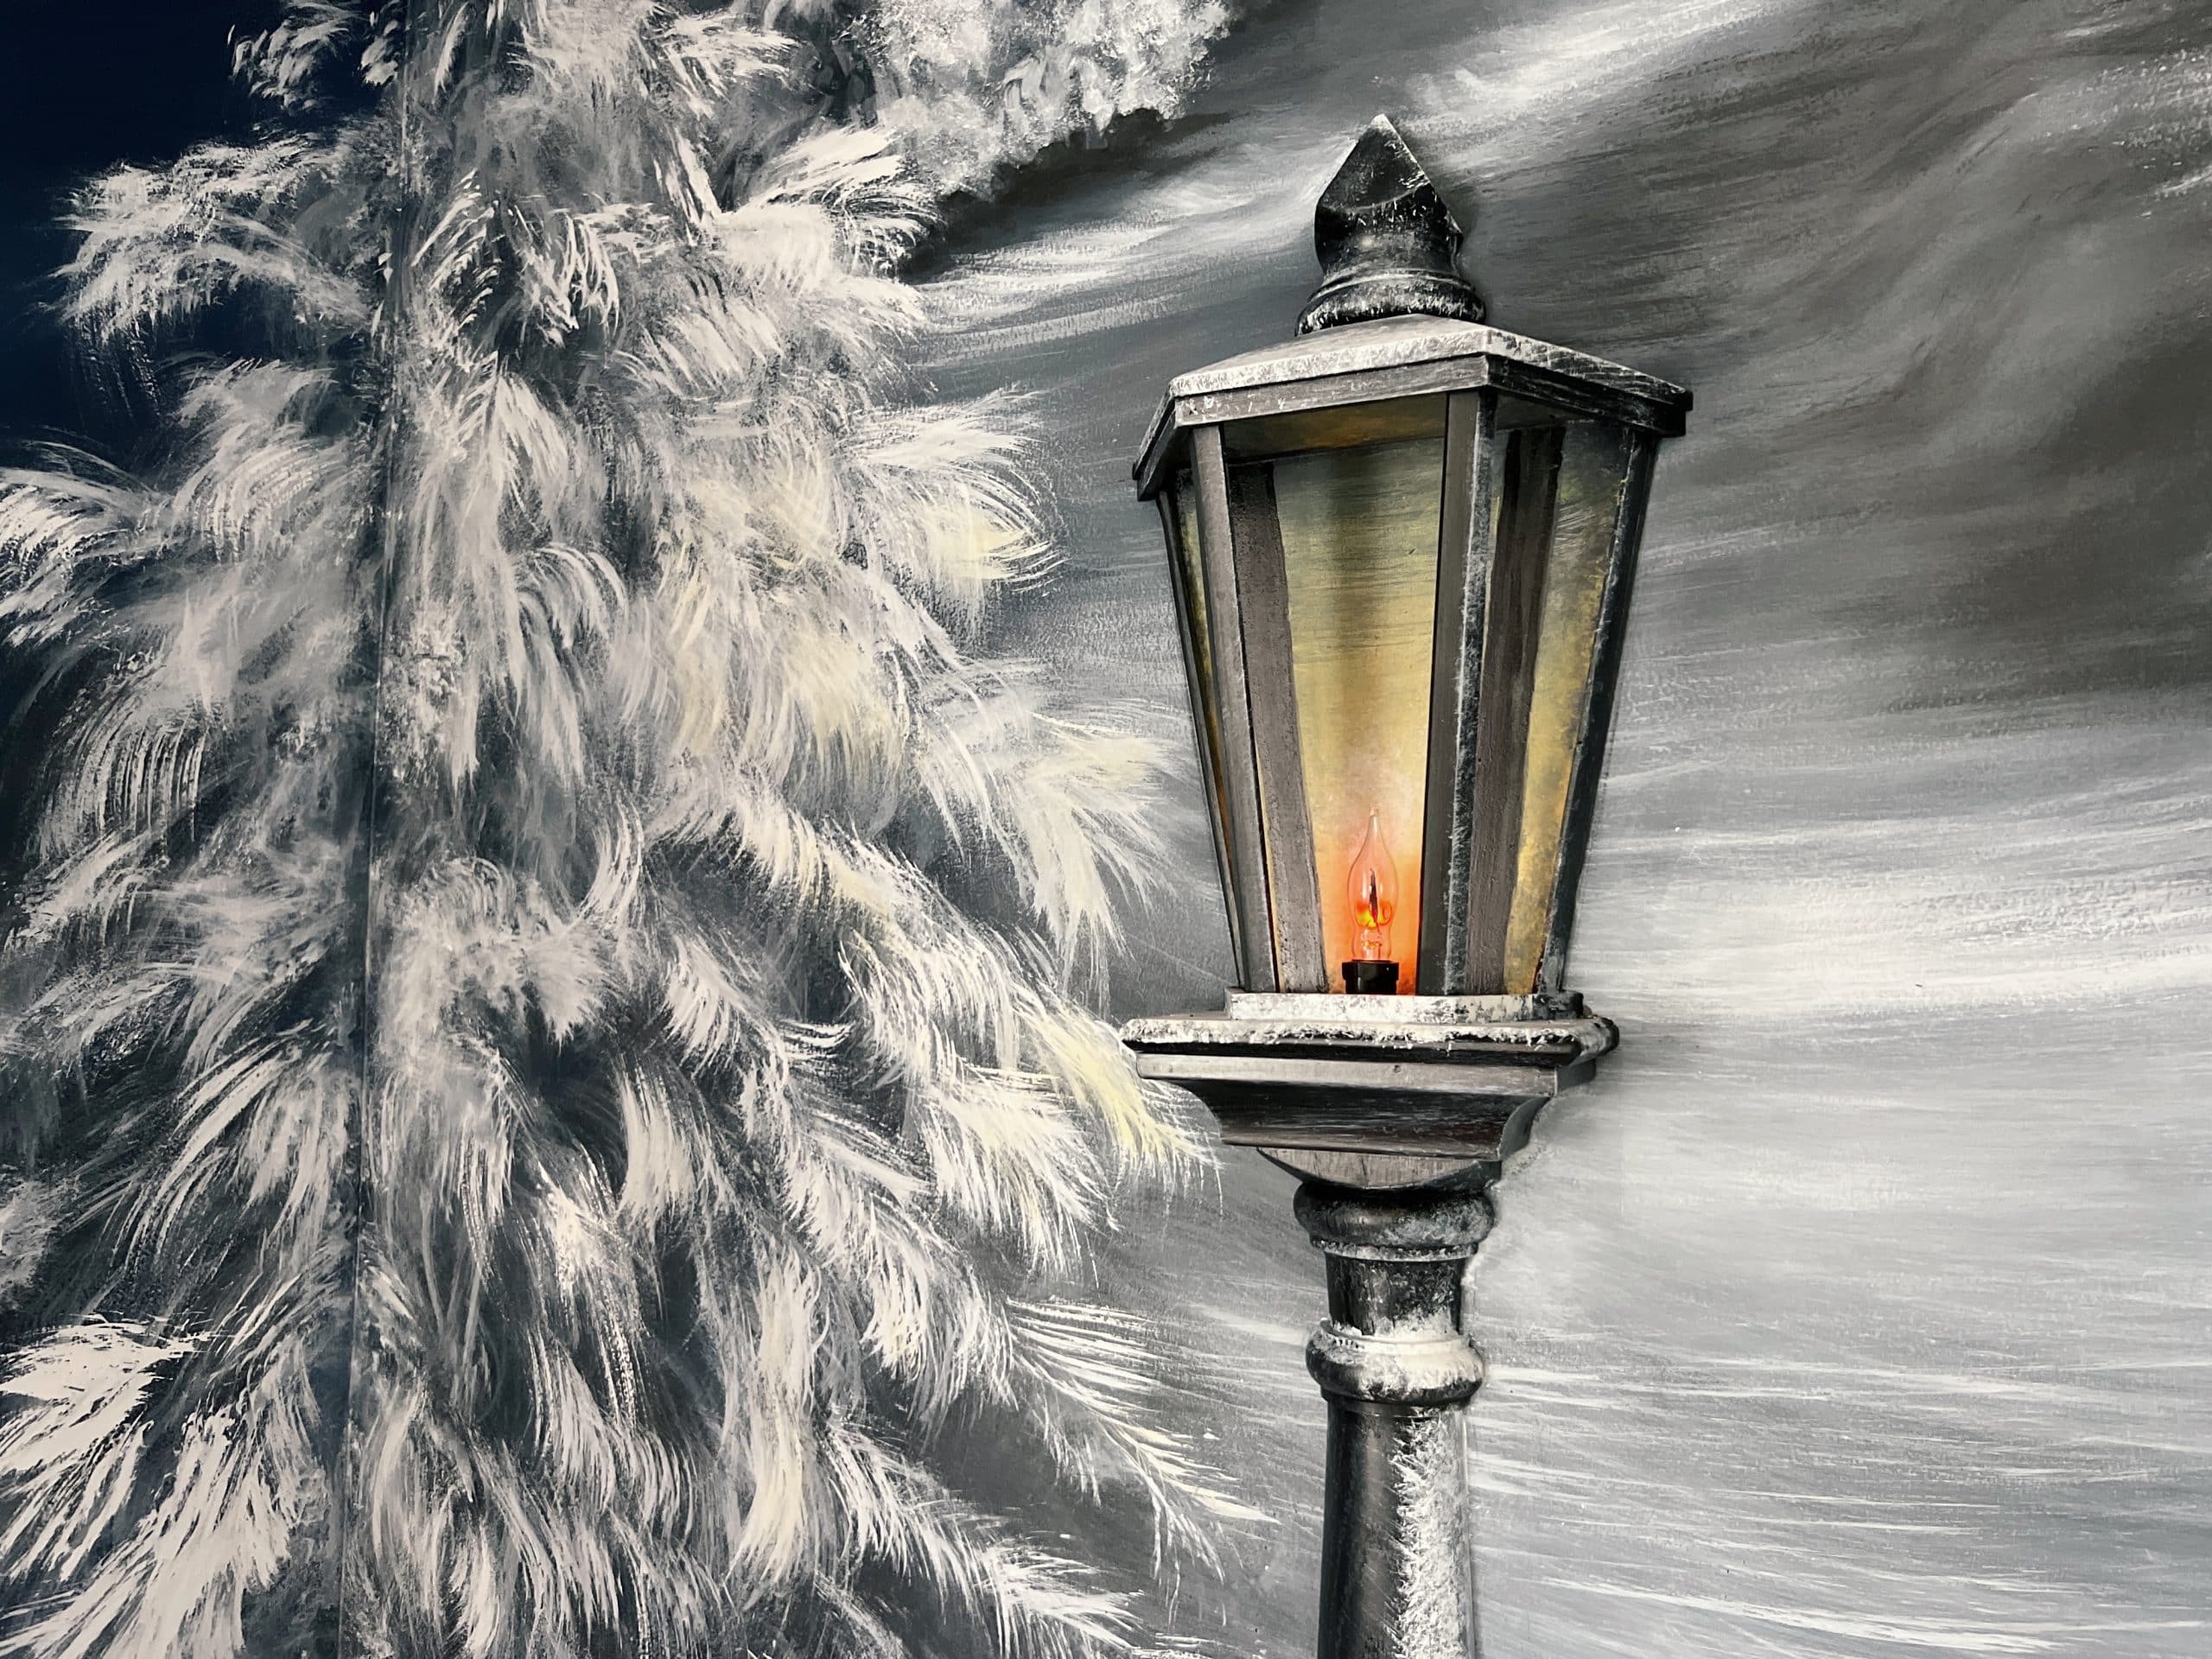 Lamppost in Narnia mural